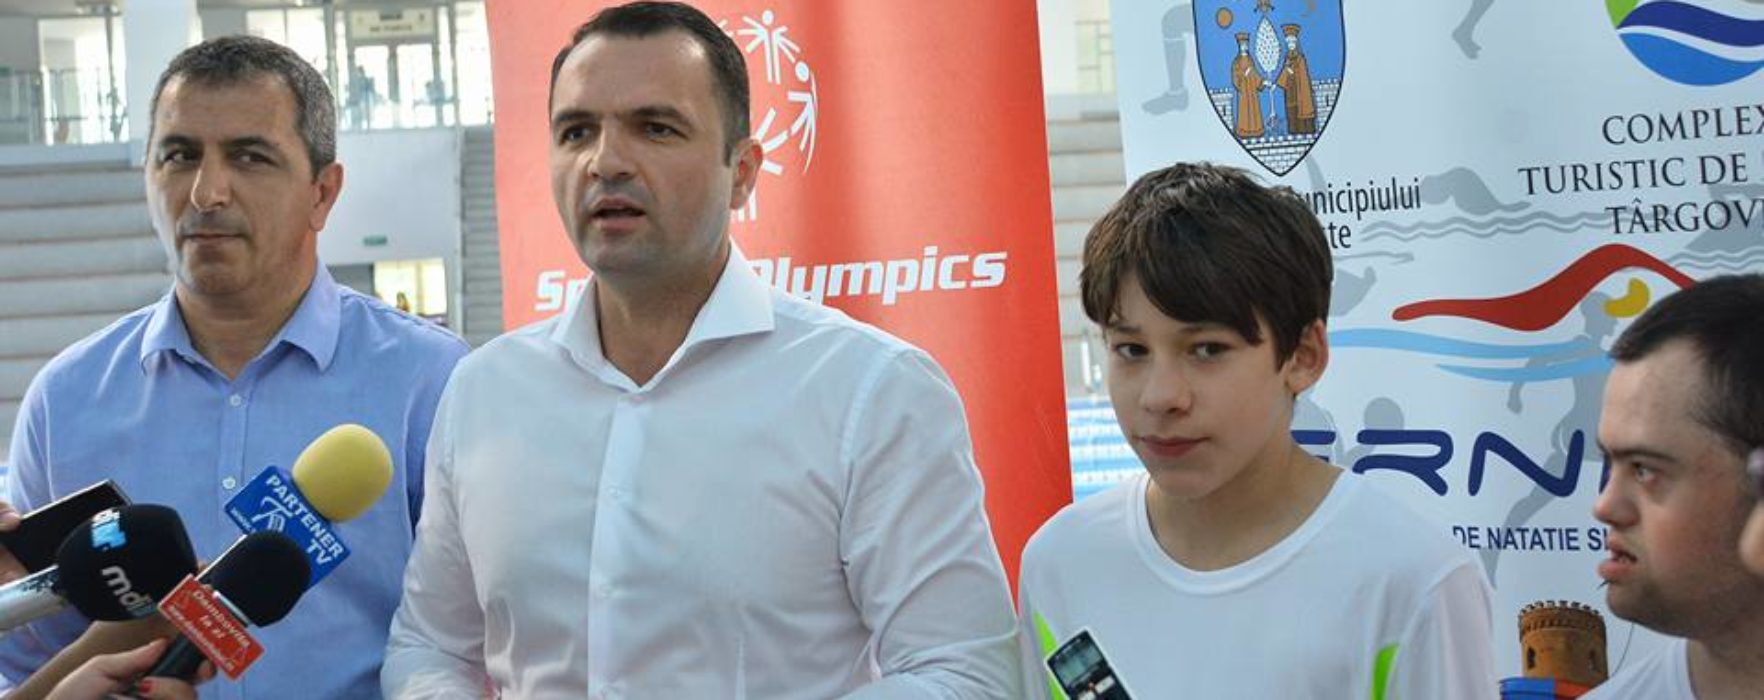 Târgovişte: Peste 300 de sportivi la Jocurile Naţionale Special Olympics care încep pe 25 mai